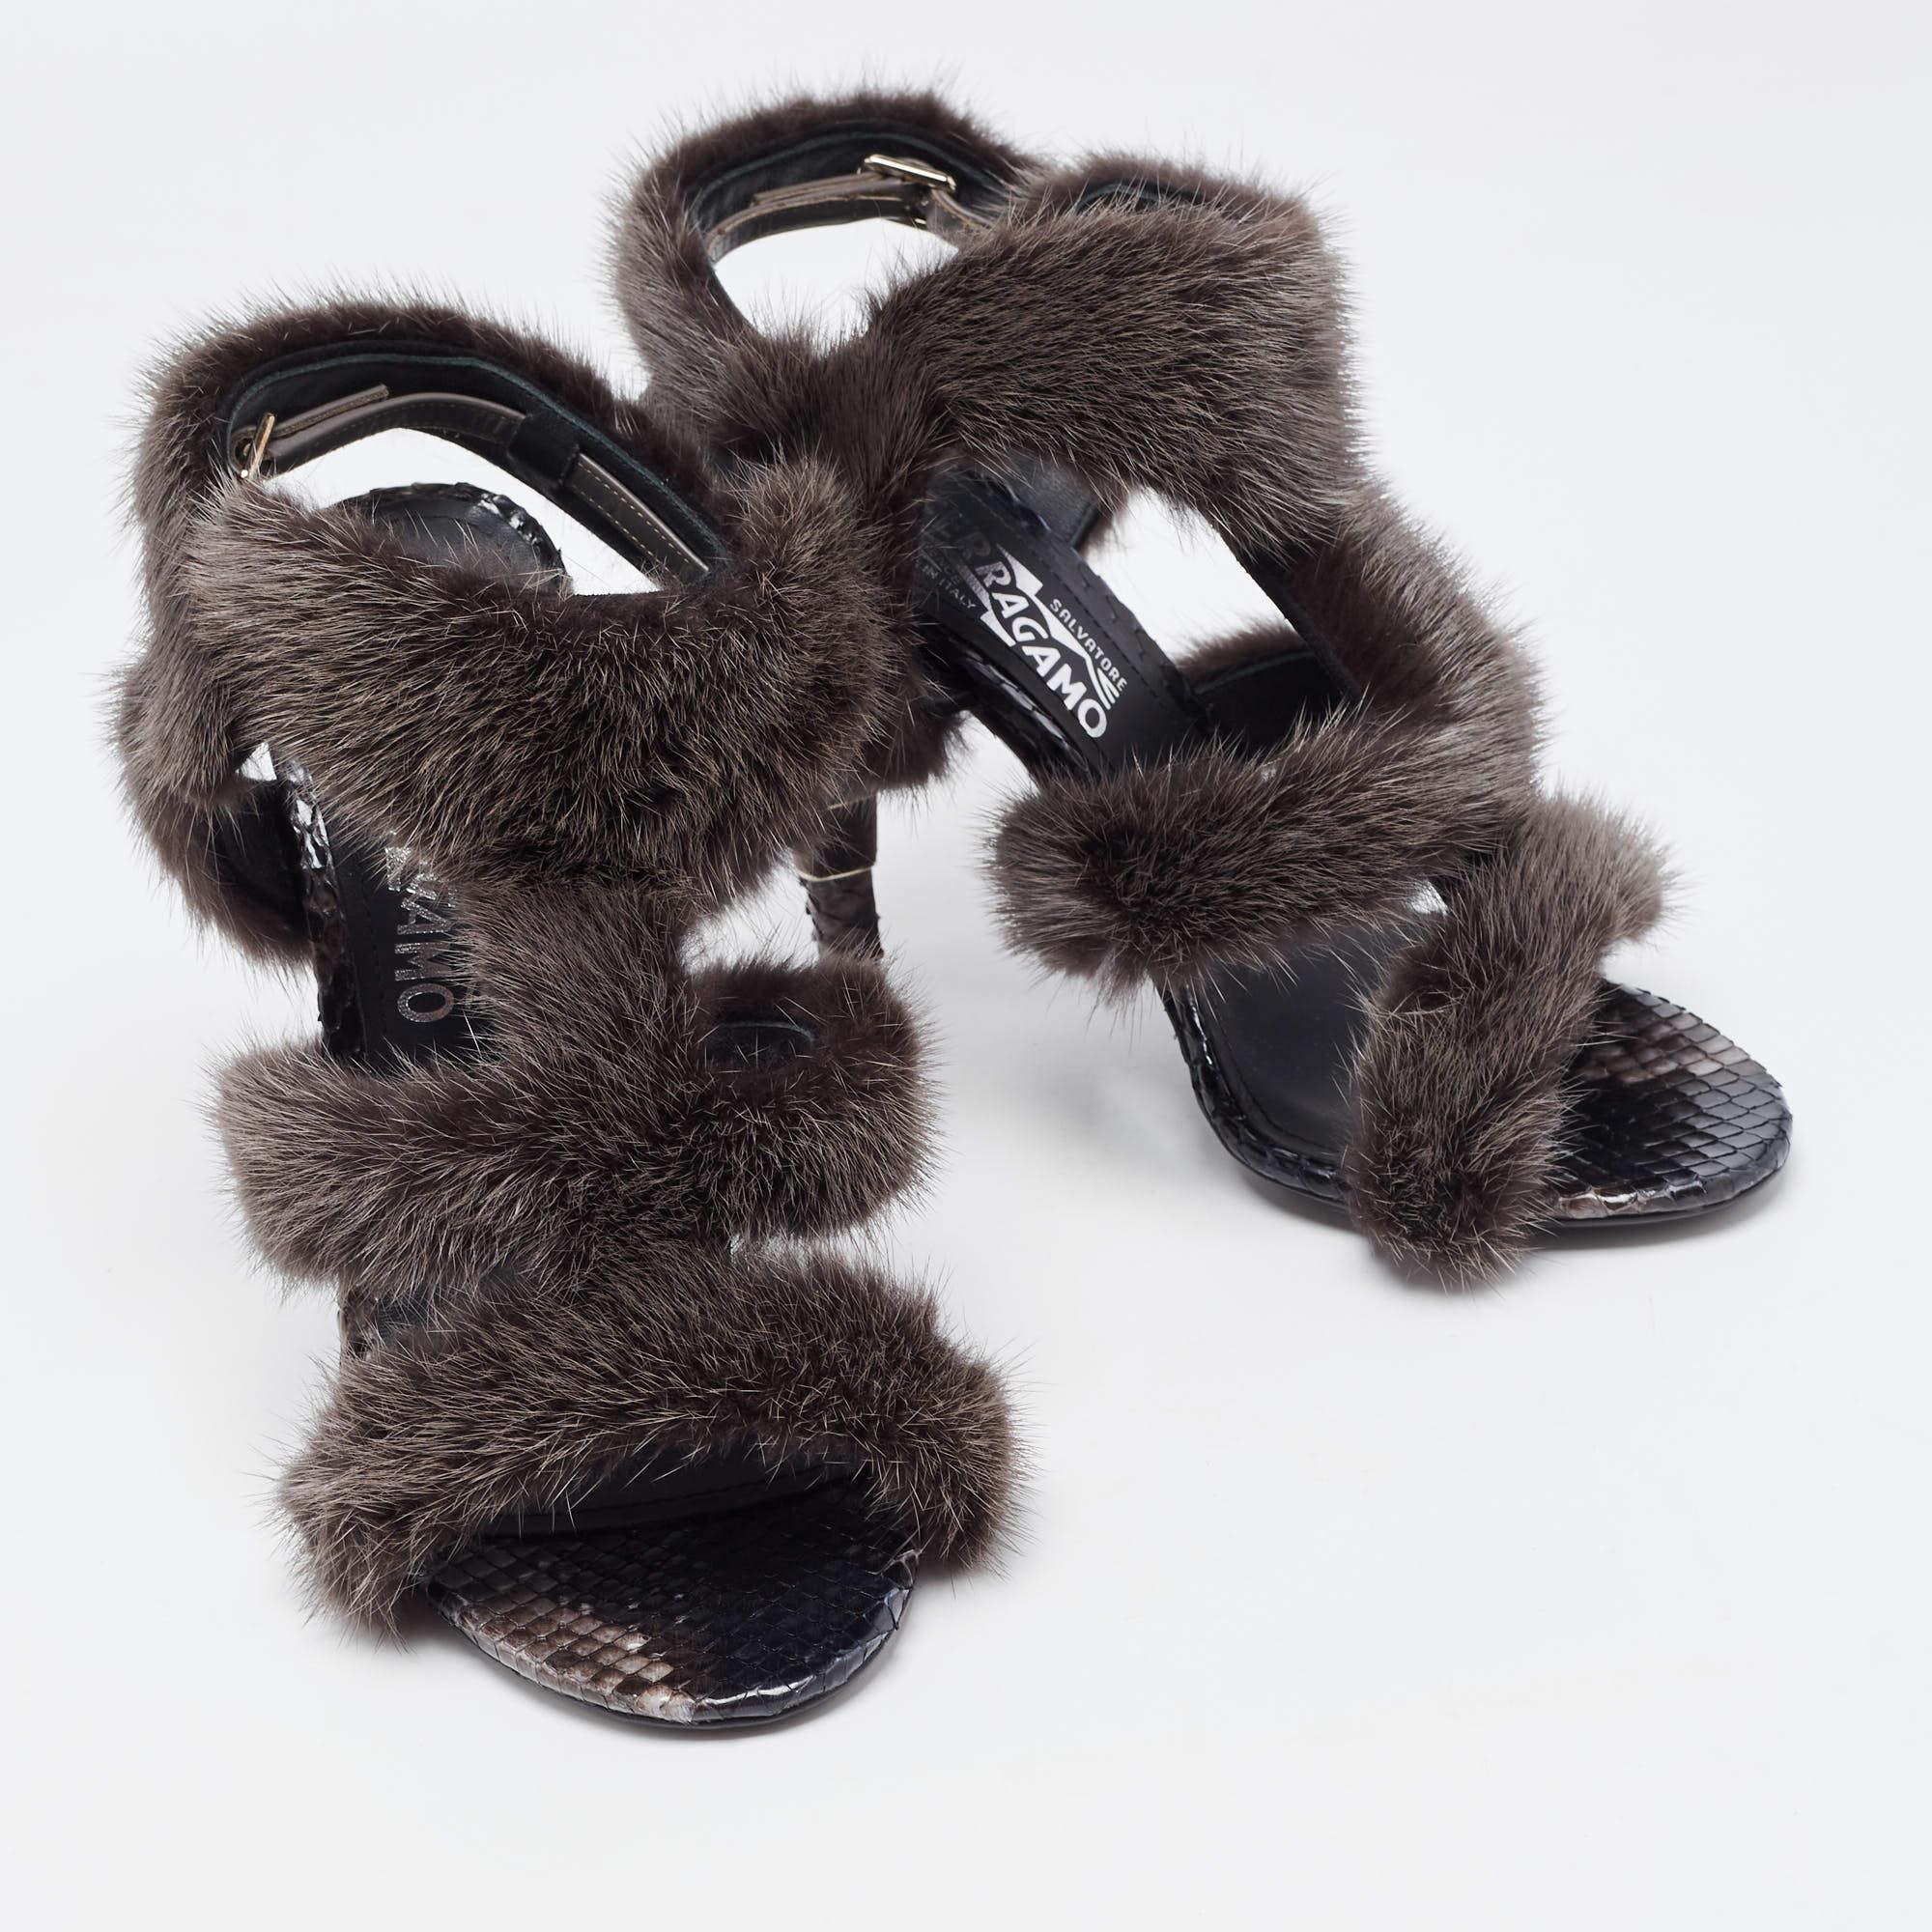 Salvatore Ferragamo Brown Mink Fur and Python Leather Cage Sandals Size 39 In New Condition For Sale In Dubai, Al Qouz 2